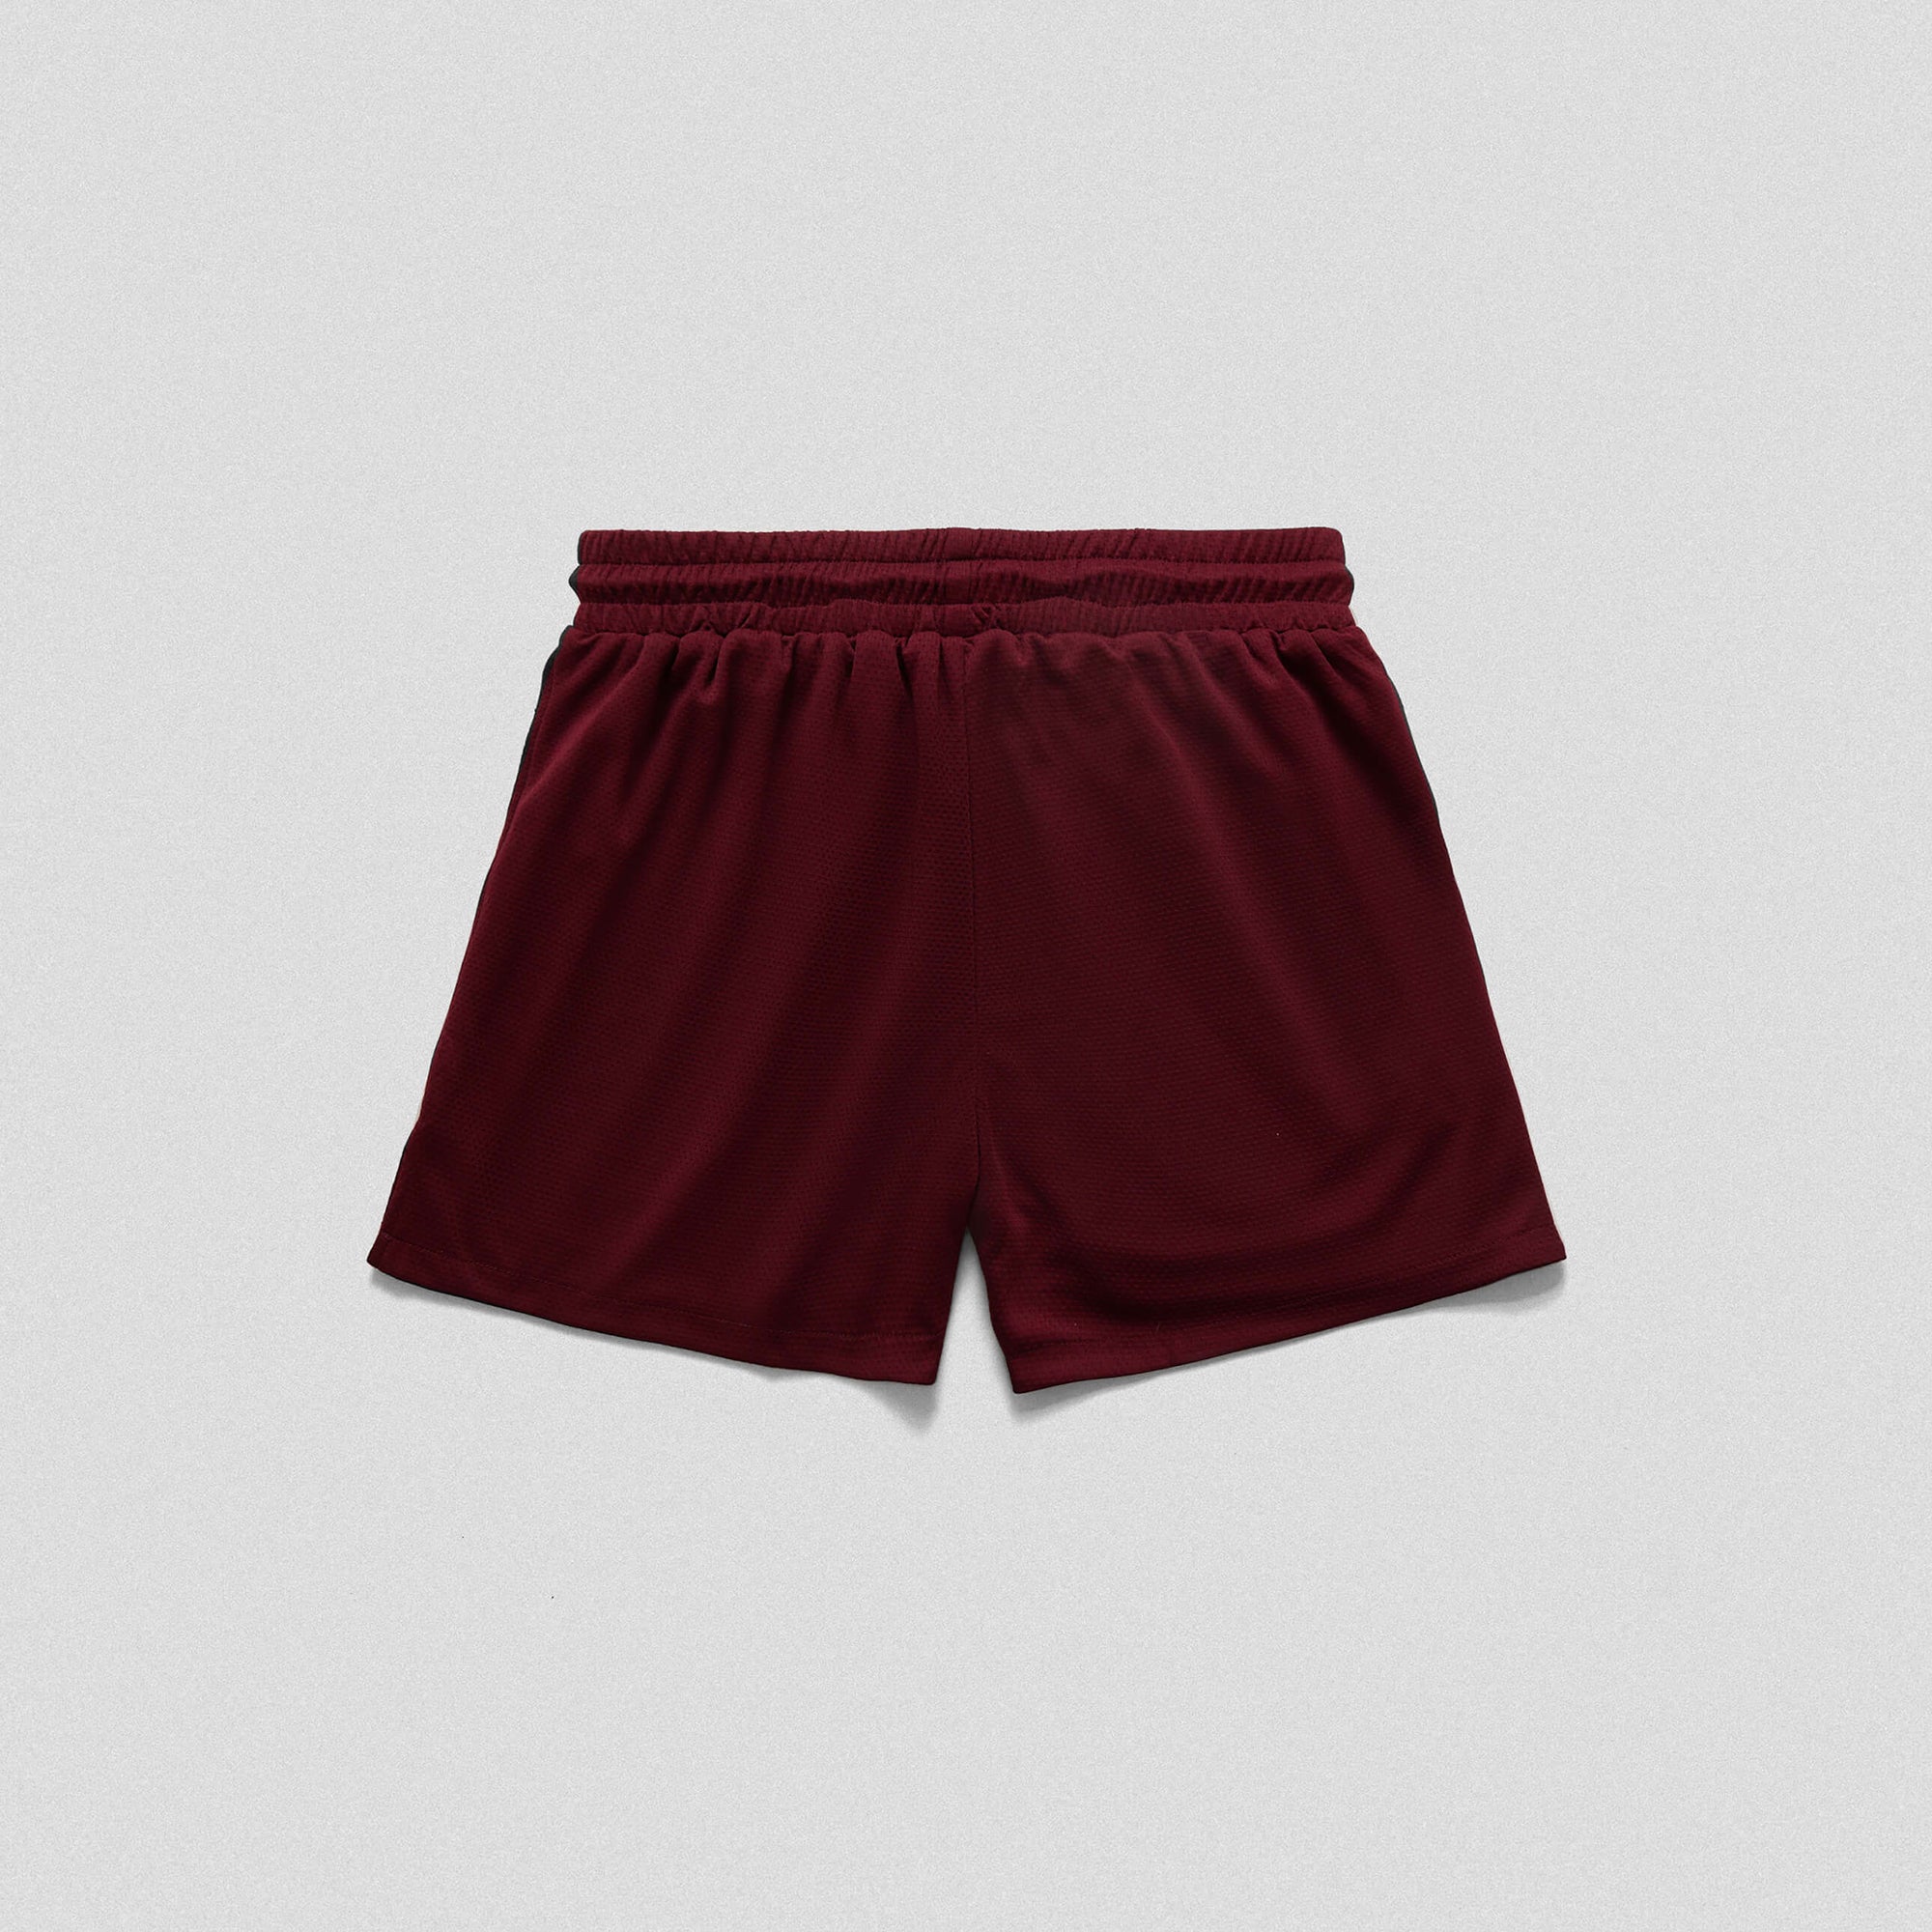 mesh shorts burgundy back